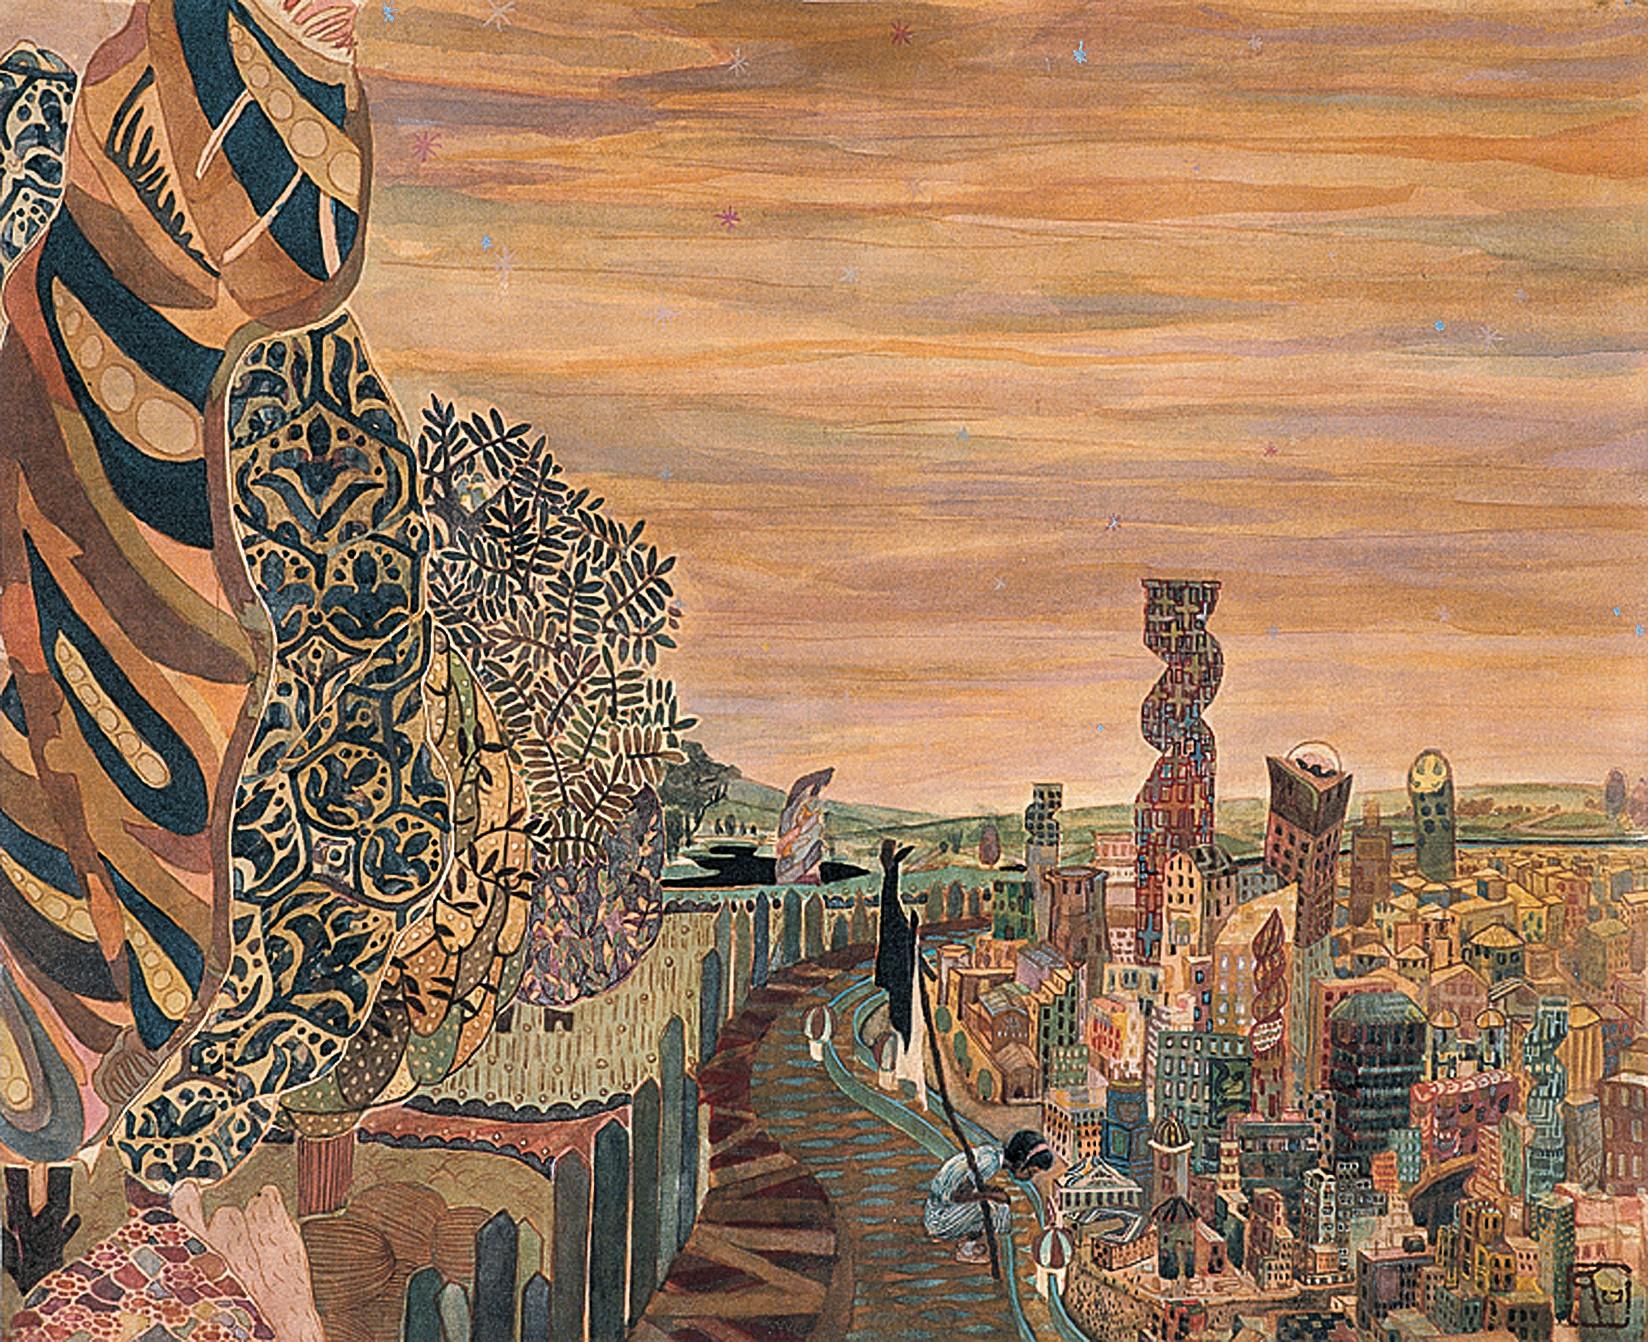 Landscape Painting Maki Kuchida - « La ville », peinture figurative en soie, aventure de courage de vie